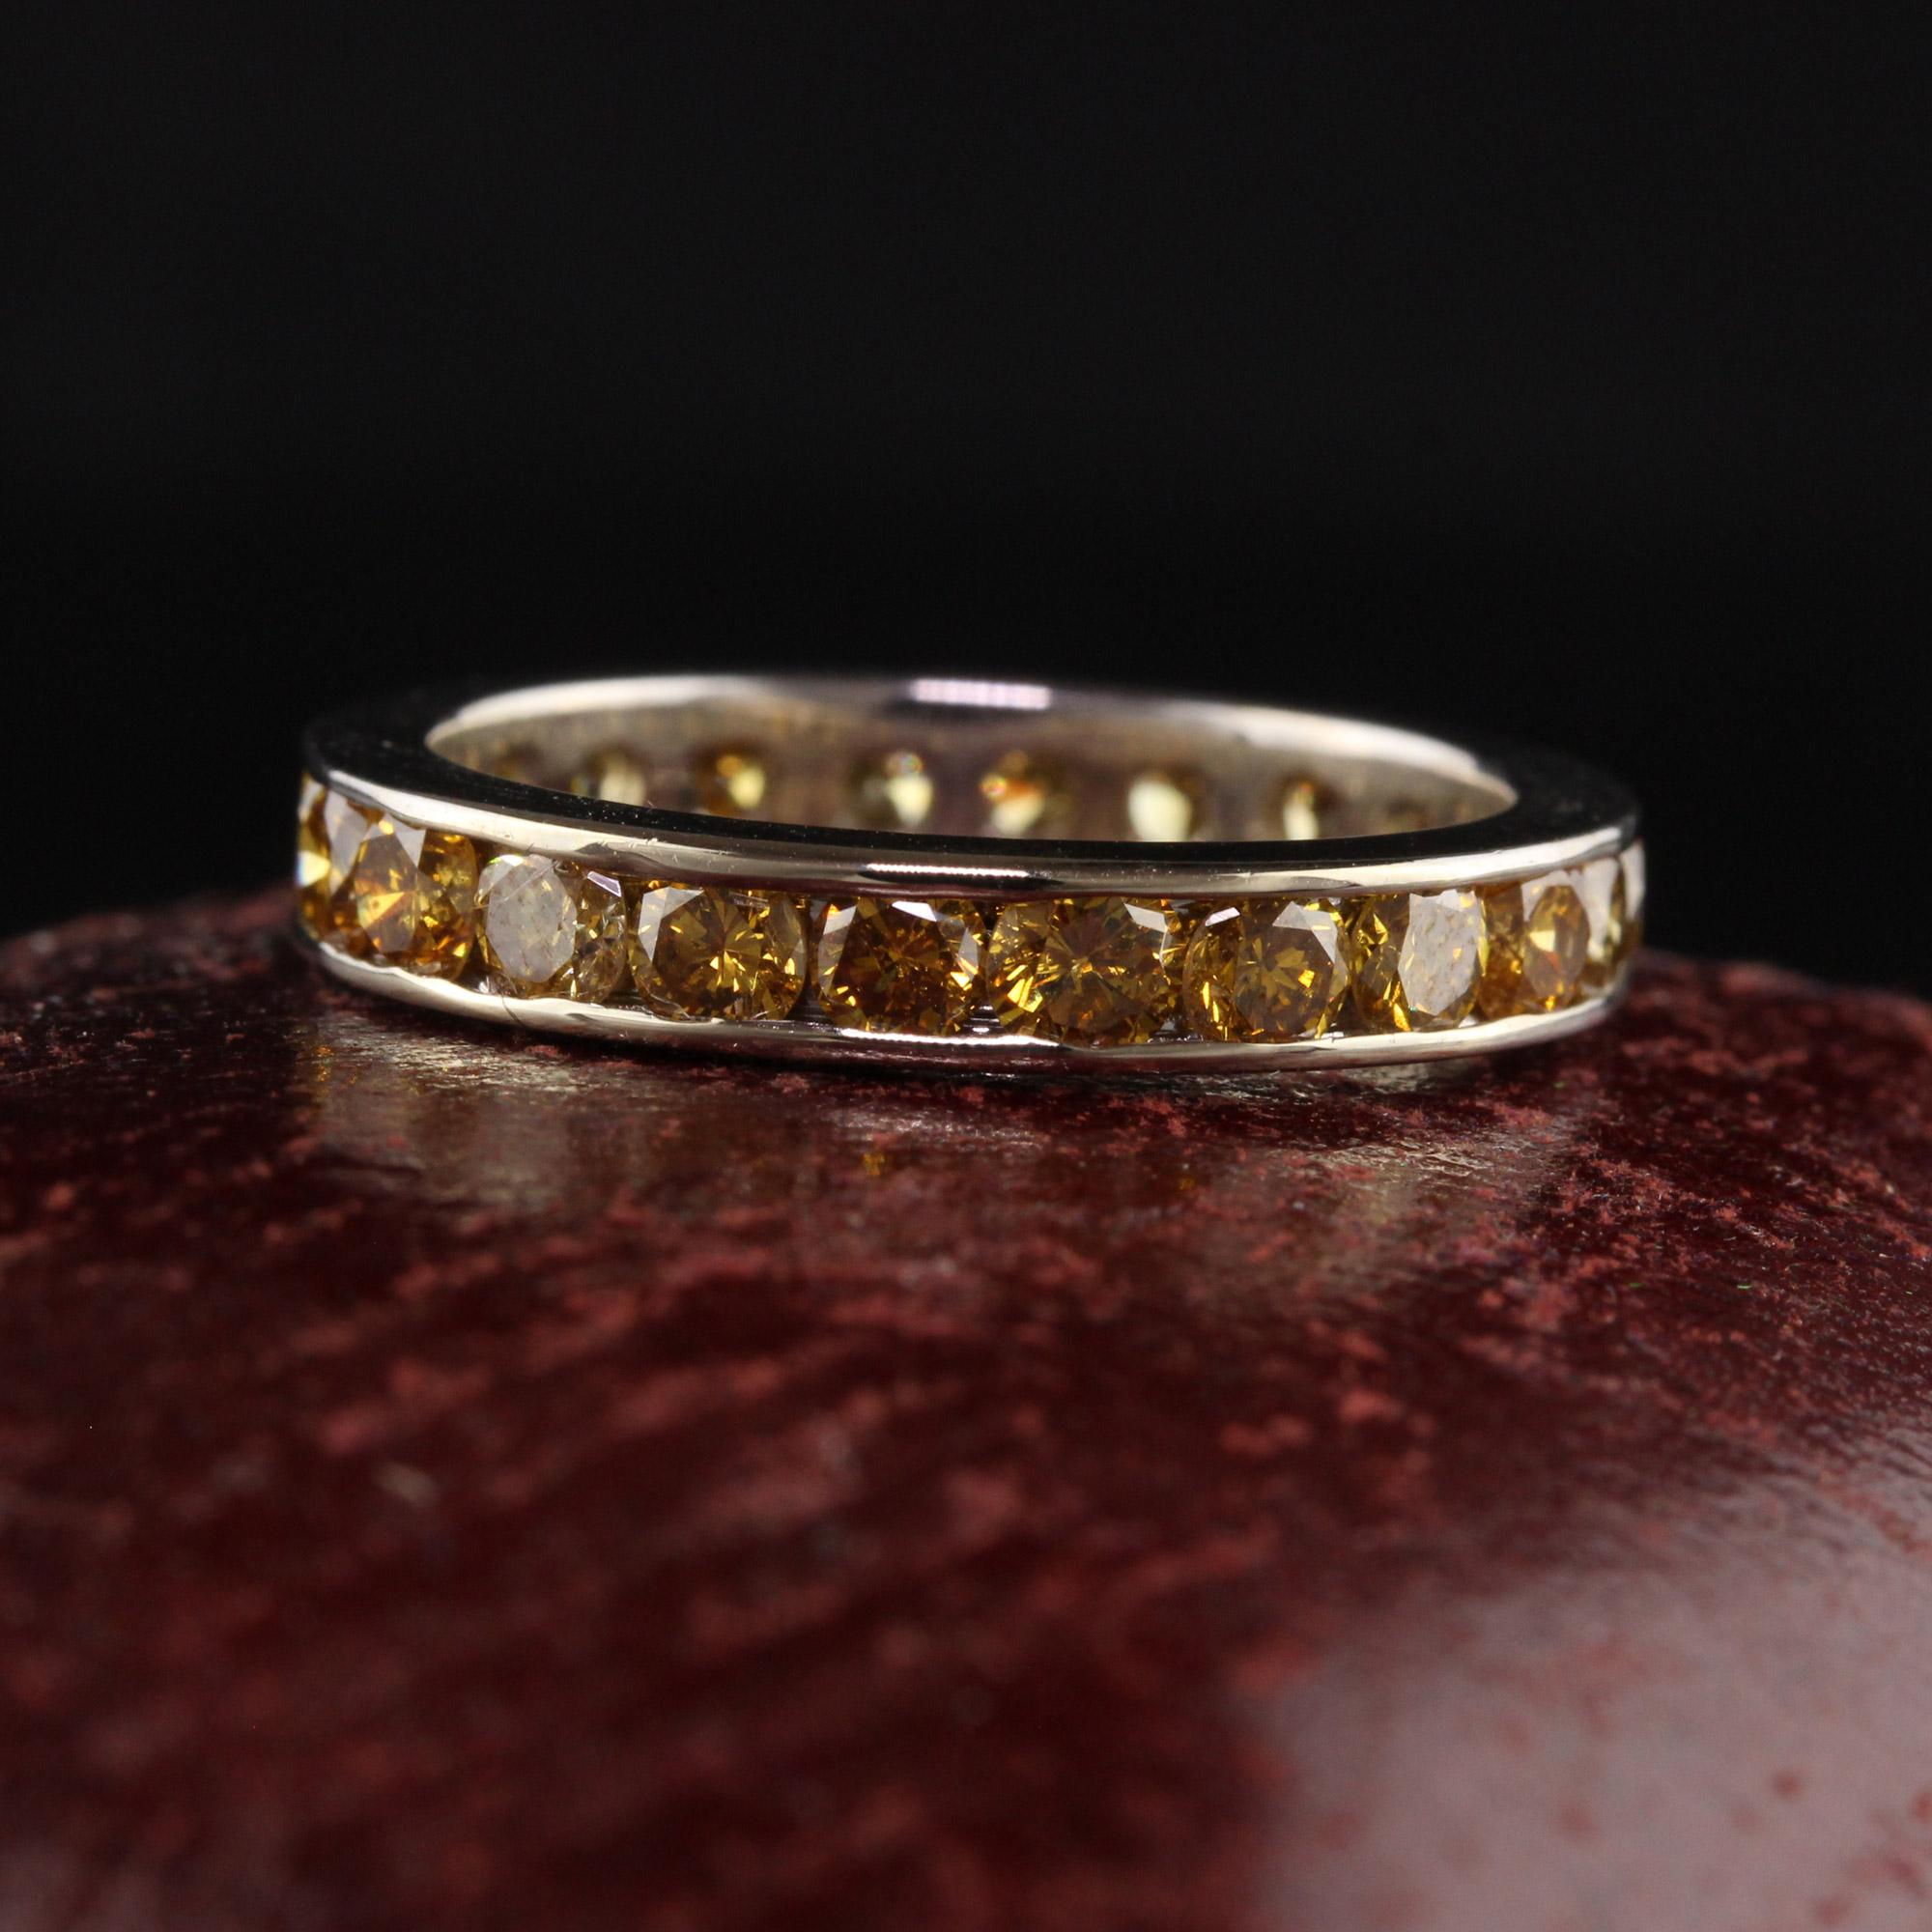 Magnifique bracelet éternité en or blanc 14K avec saphir jaune rond. Ce magnifique bracelet est fabriqué en or blanc 14 carats. Des saphirs jaunes ronds naturels font le tour de l'anneau et celui-ci est en excellent état.

Article #R1381

Métal : Or